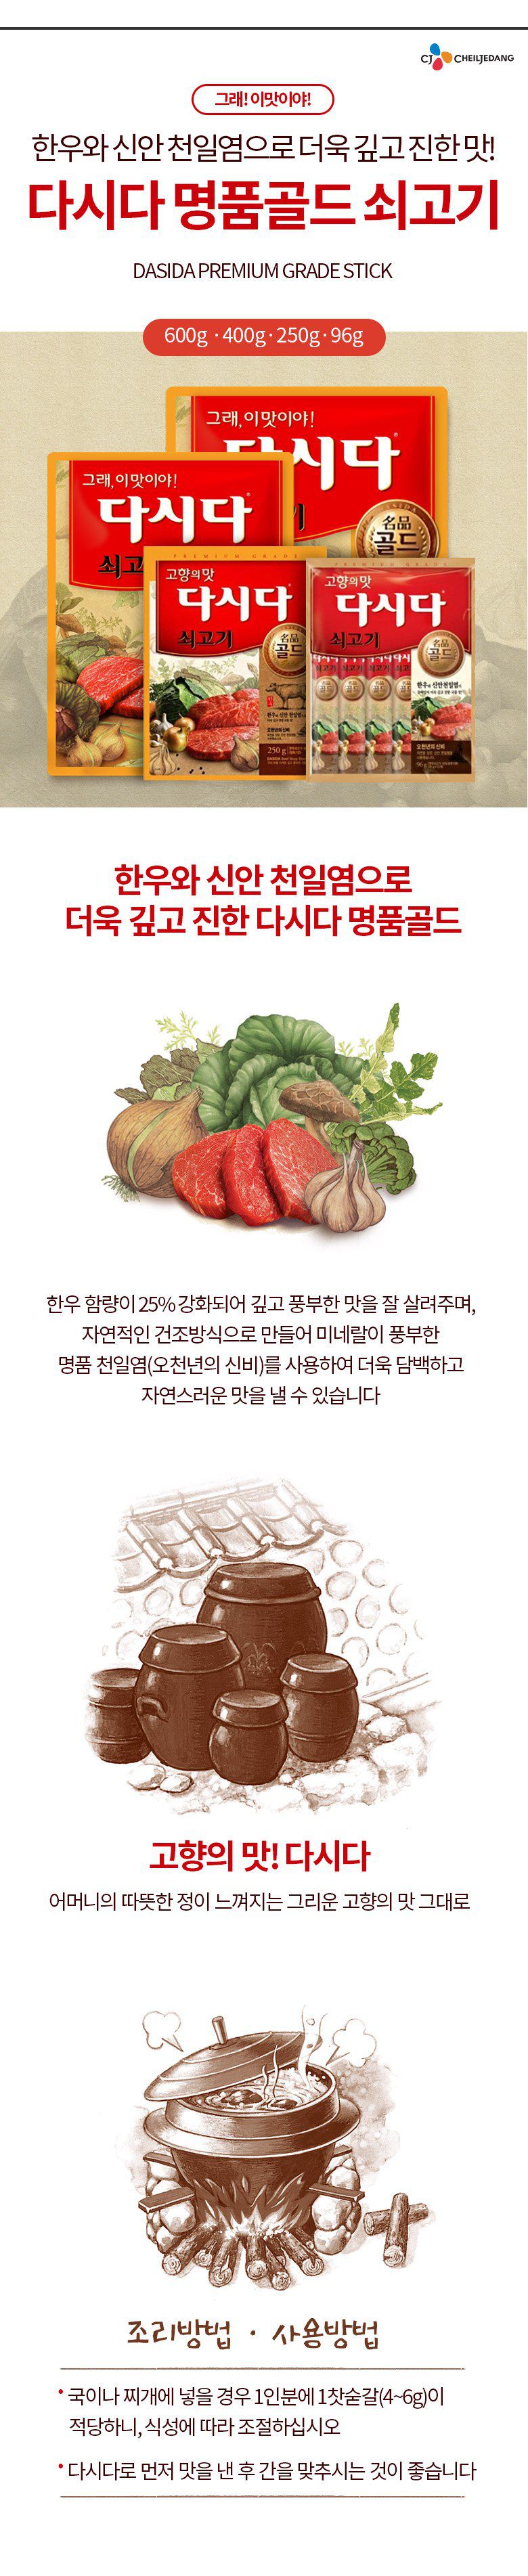 韓國食品-[CJ] 調味粉[牛肉] 1kg